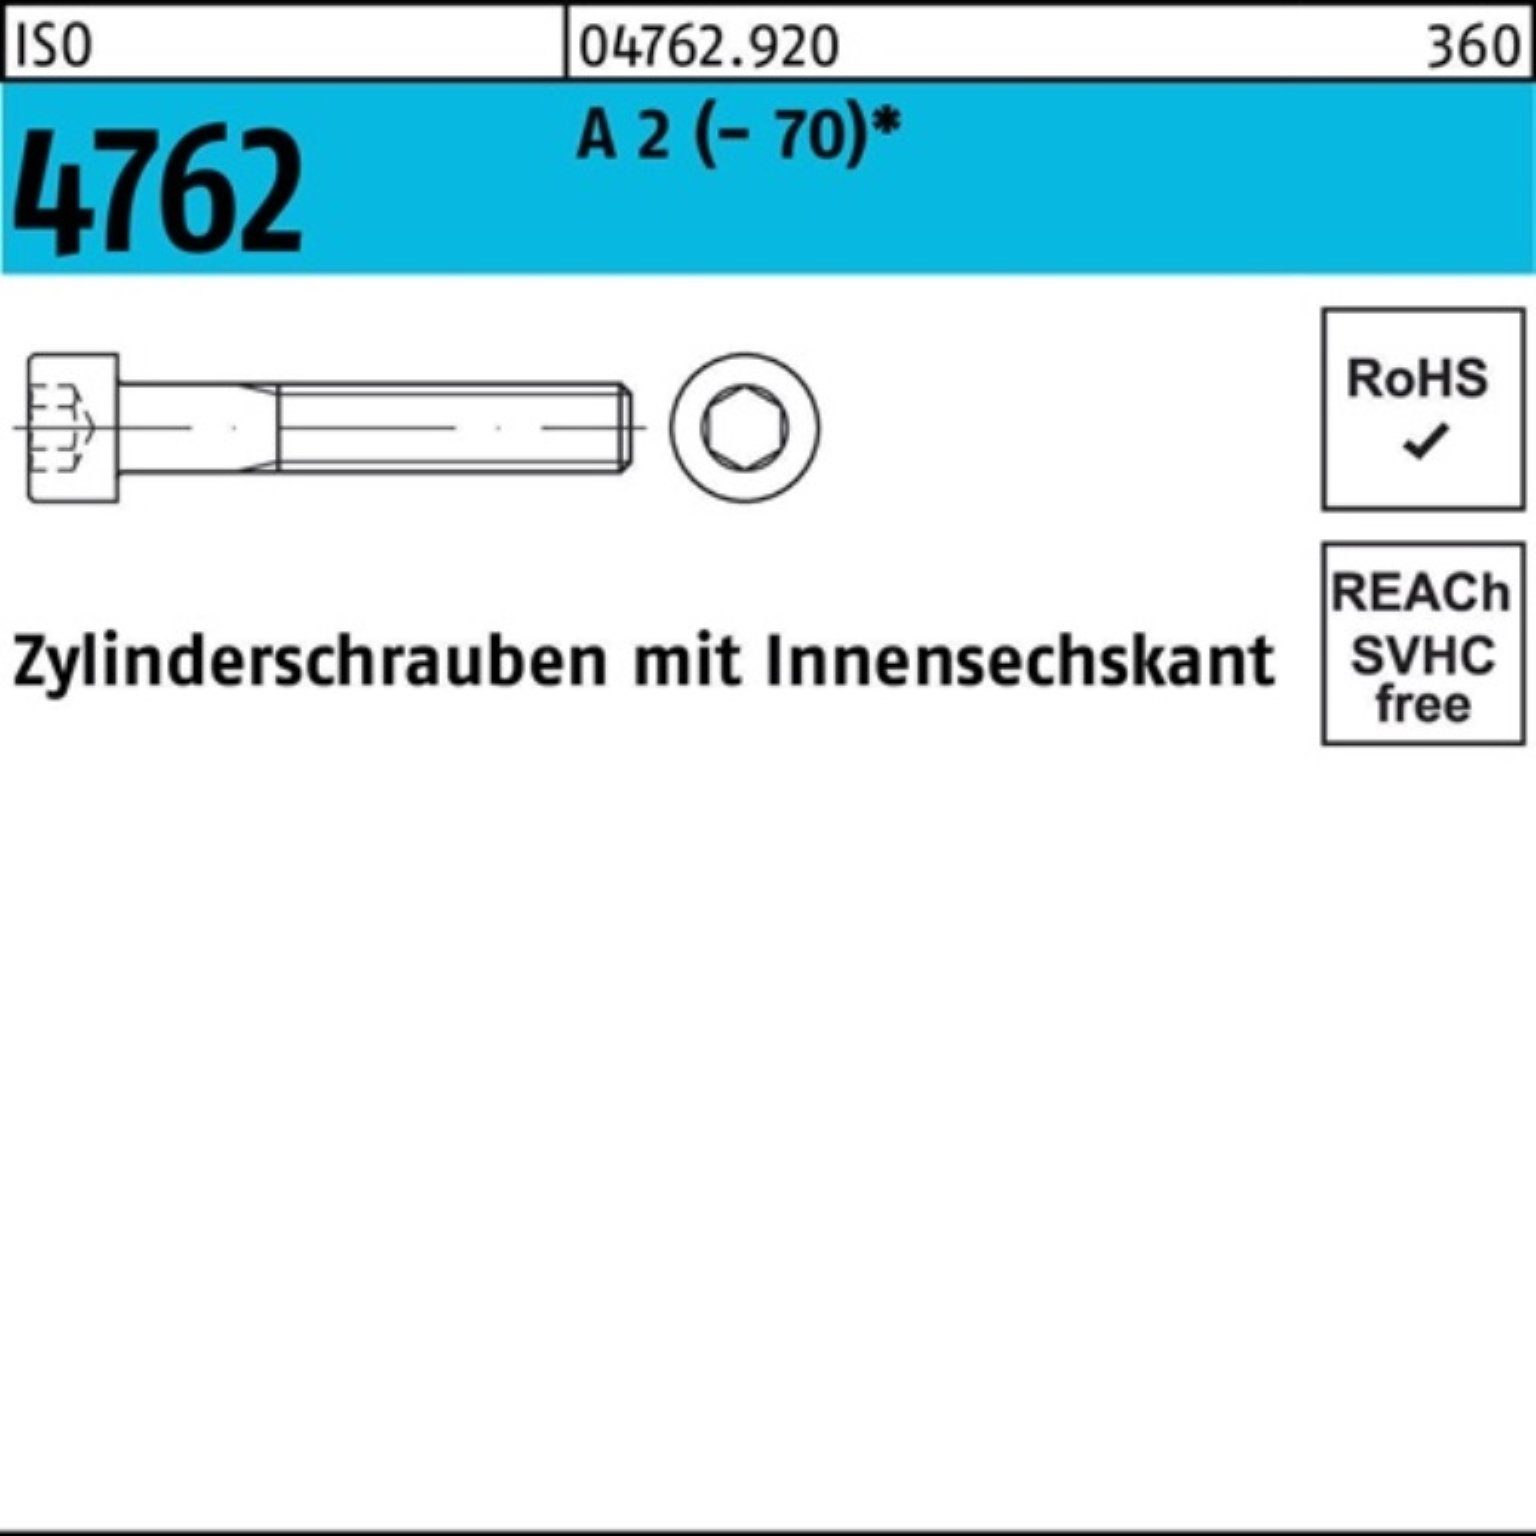 ISO 2 S Zylinderschraube (70) Innen-6kt 4762 Zylinderschraube Reyher 100er A 25 M20x Pack 75